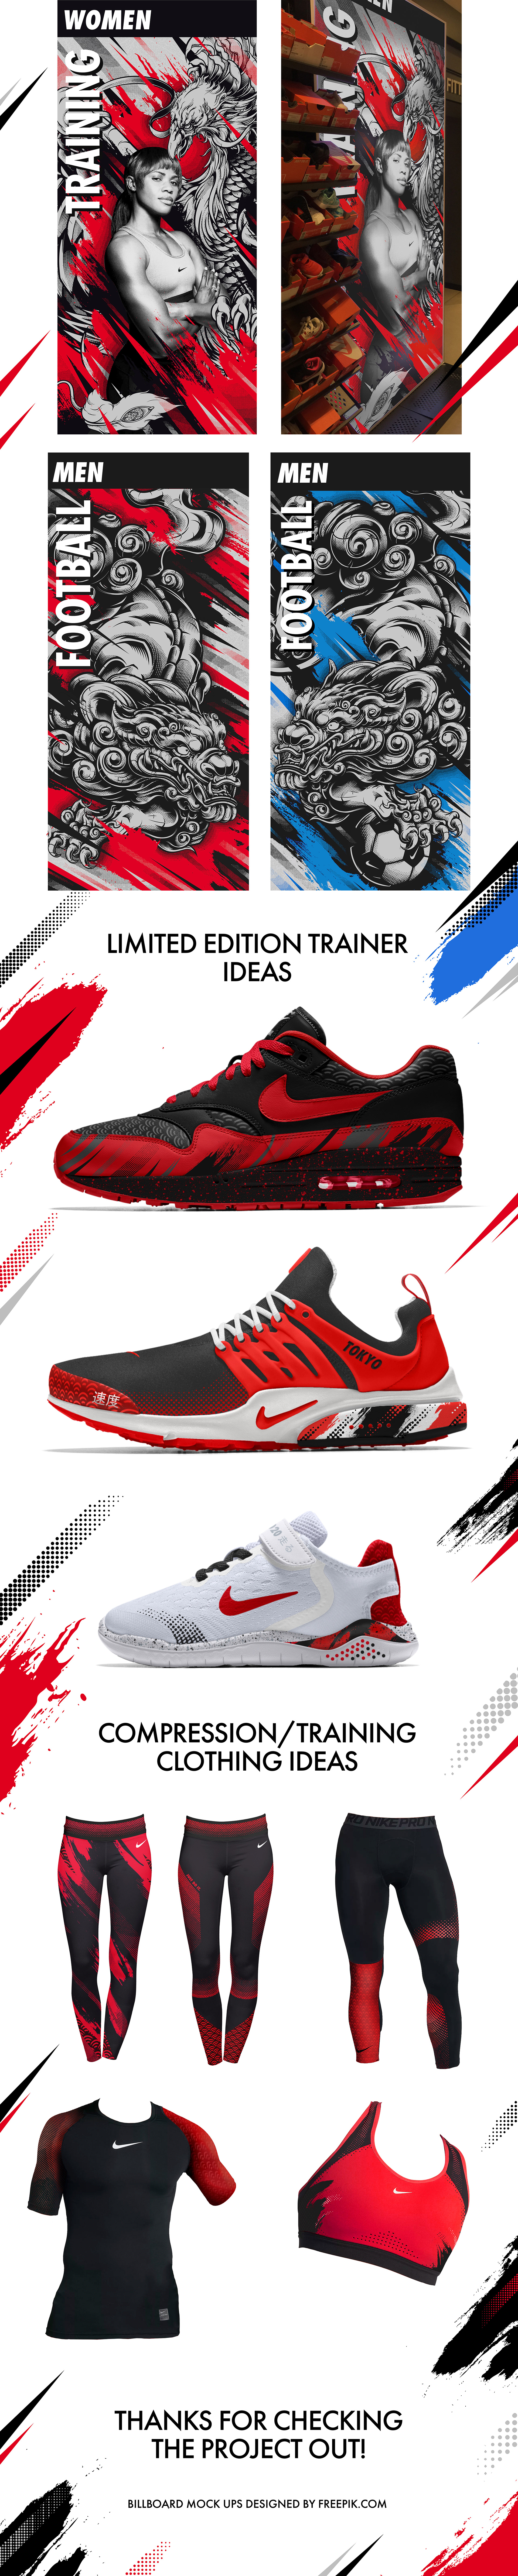 Be Legendary. Nike Branding Concept for Tokyo 2020